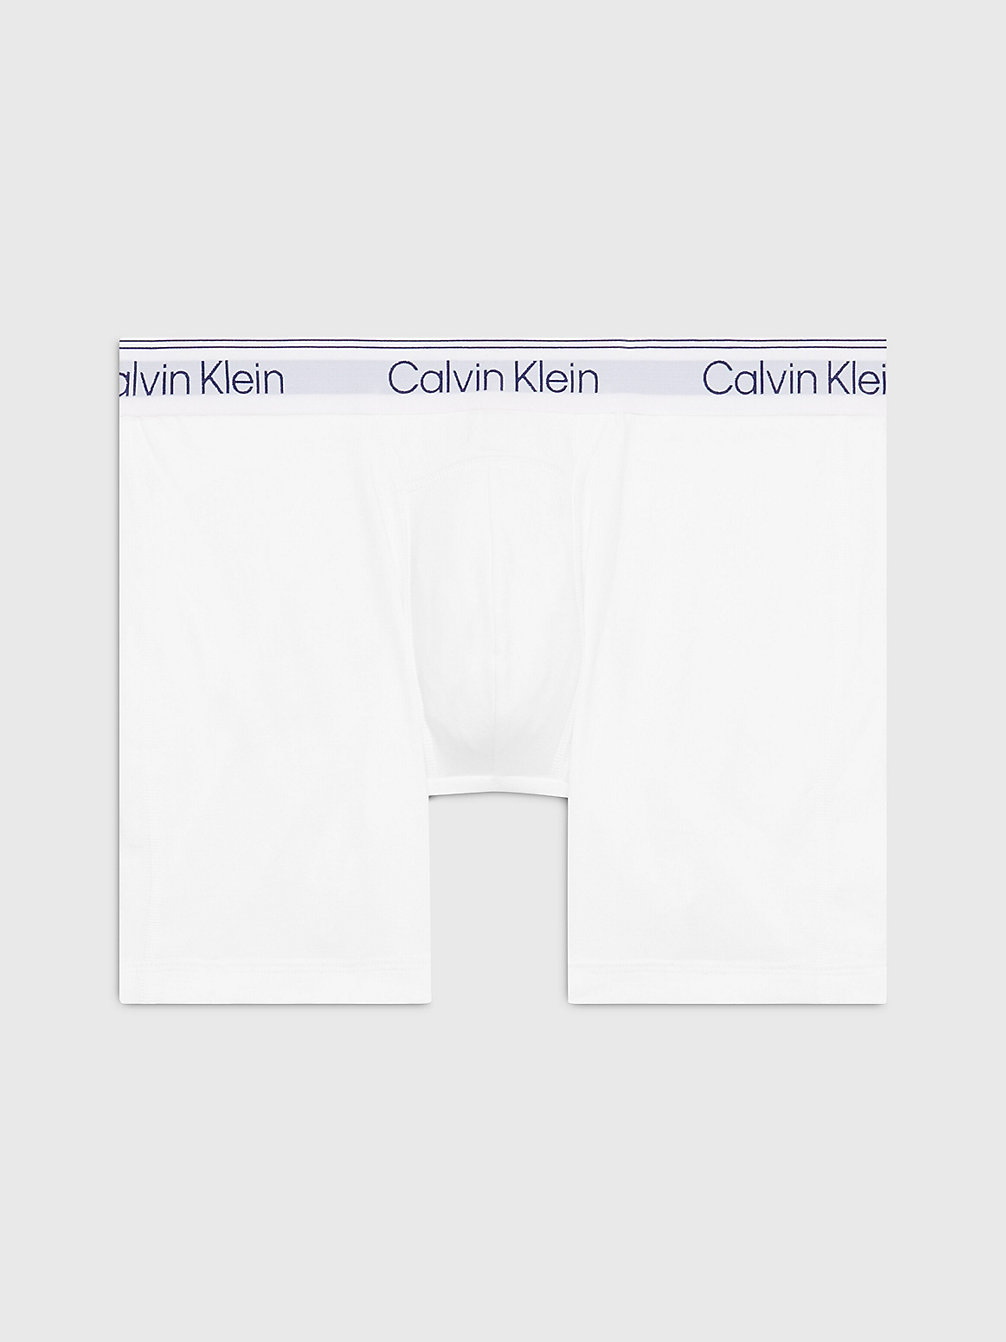 WHITE > Slipy Bokserki - Bawełna Sportowa > undefined Mężczyźni - Calvin Klein